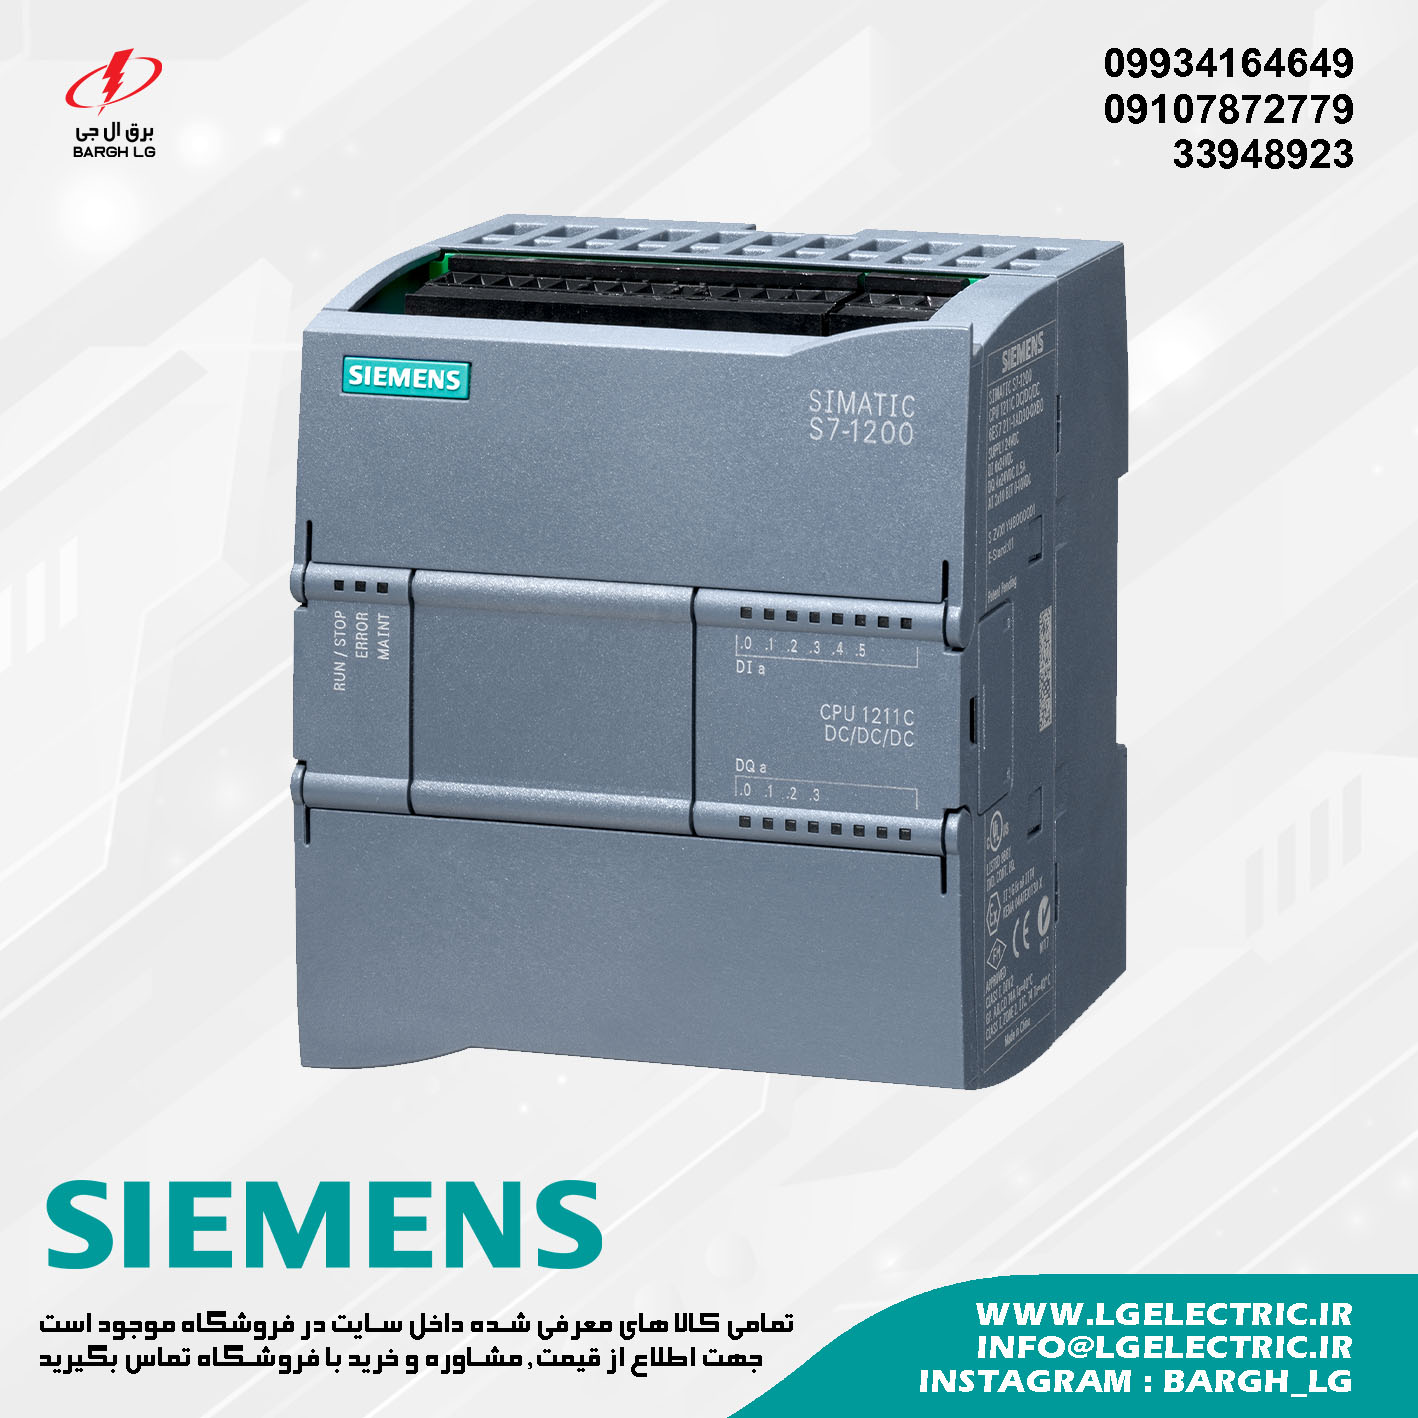 SIEMENS S7-1200 CPU 1211C